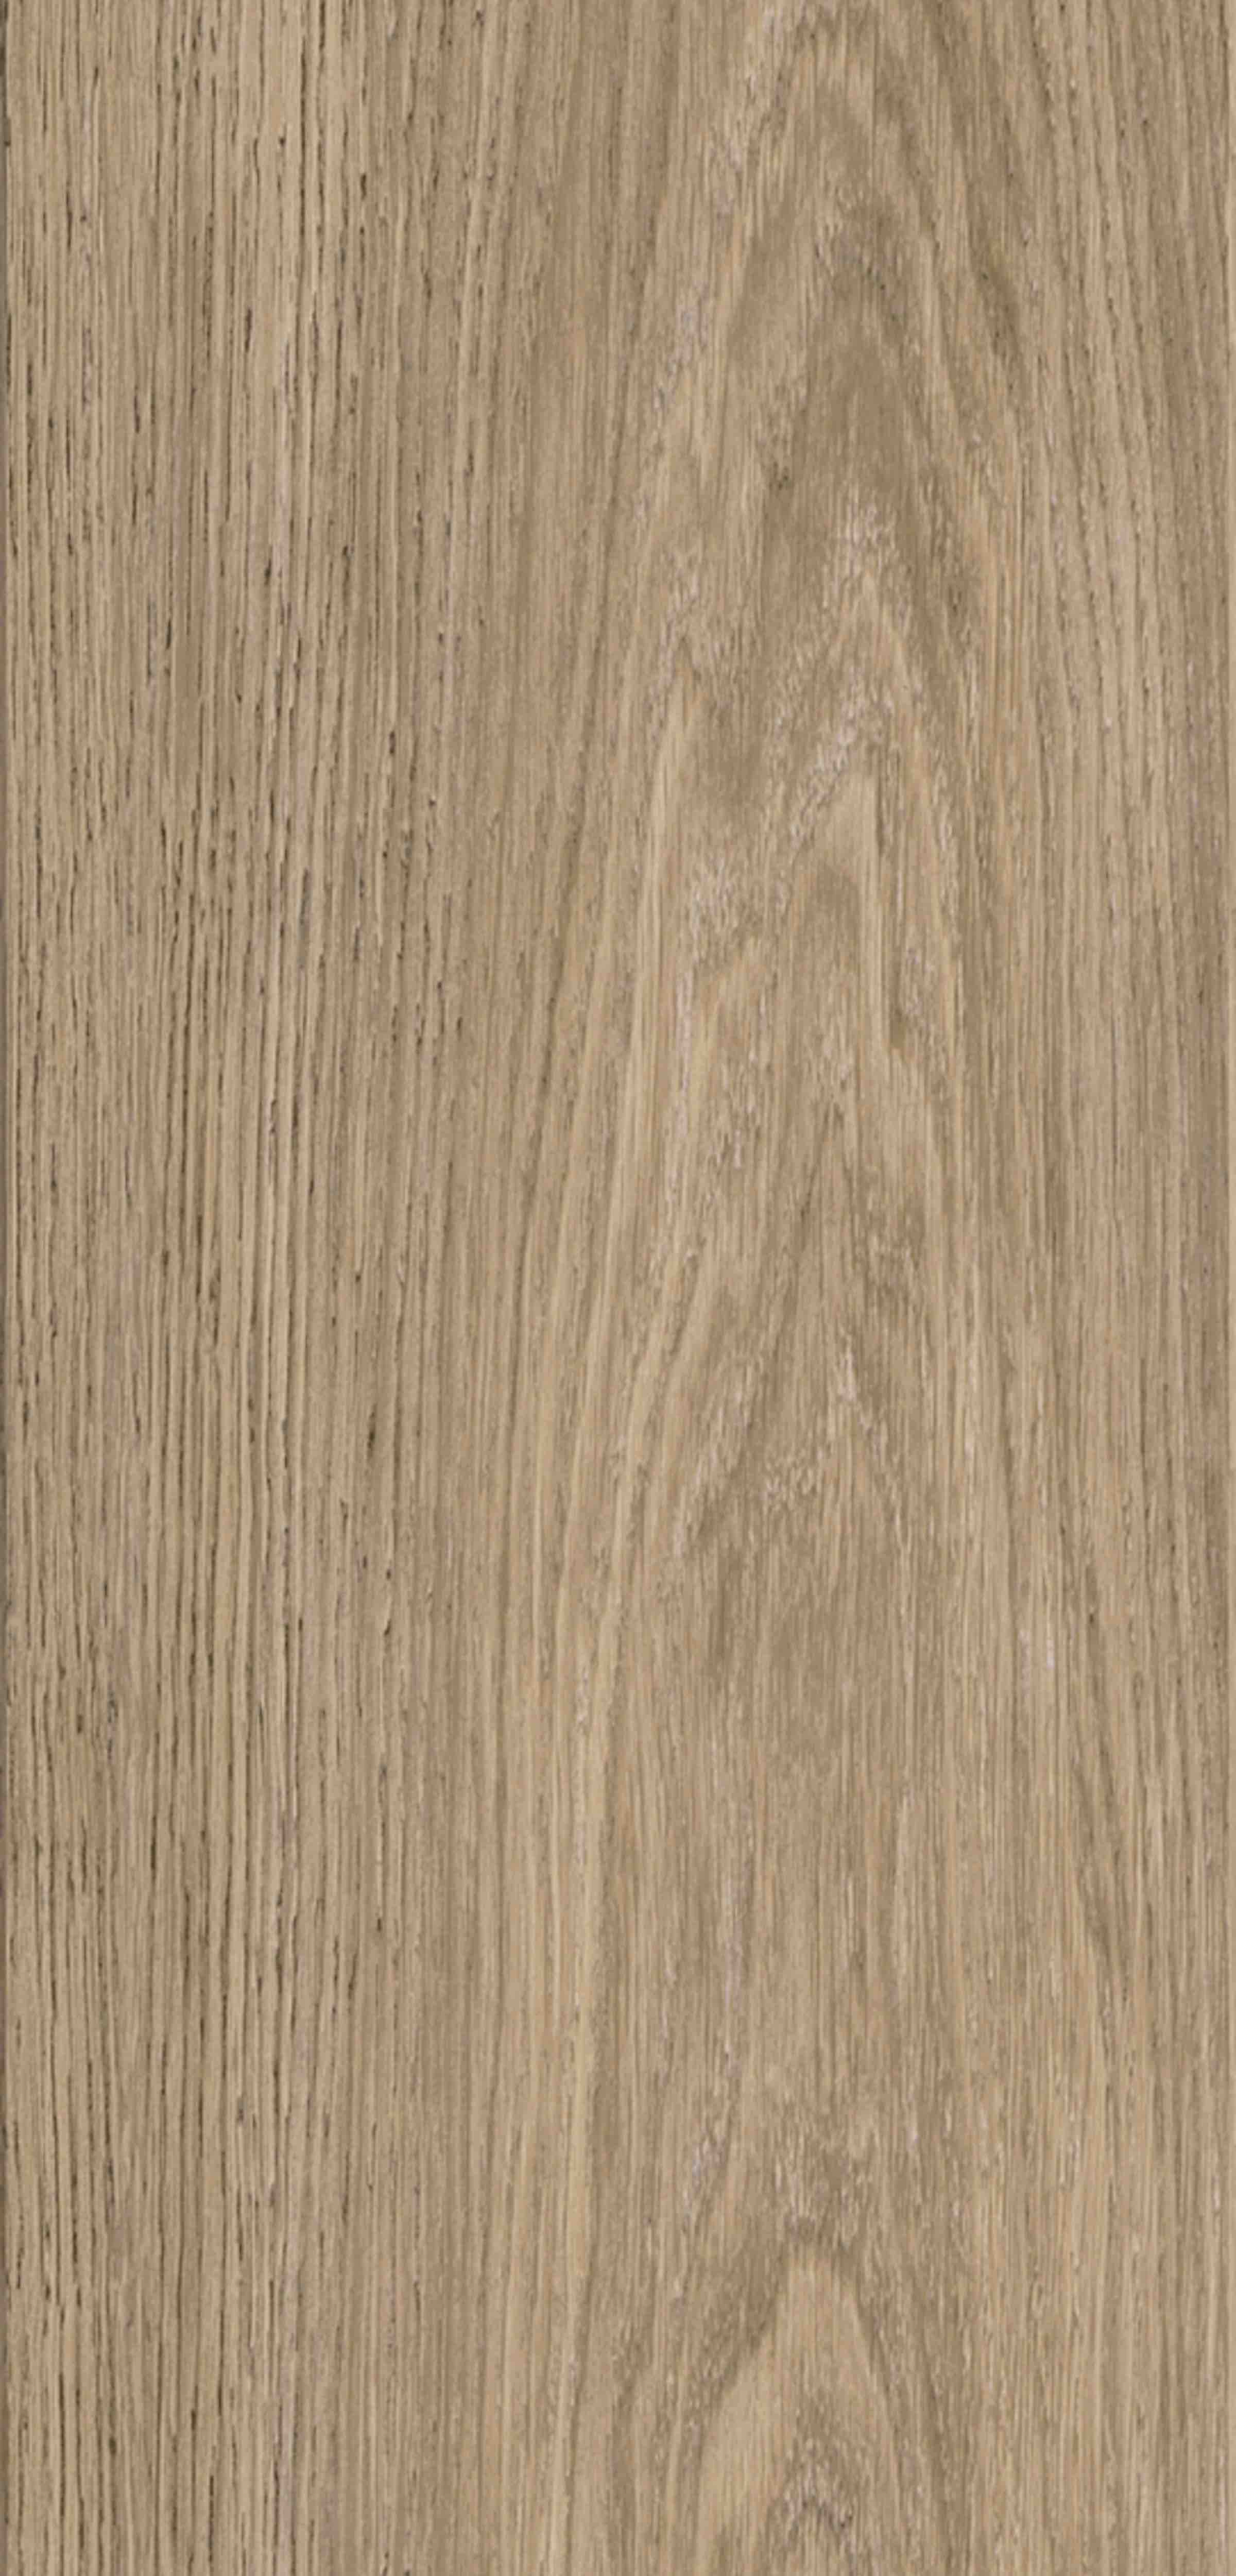 Rappórt | Orchard Oak, 2898 | Paragon Carpet Tiles | Commercial Carpet Tiles